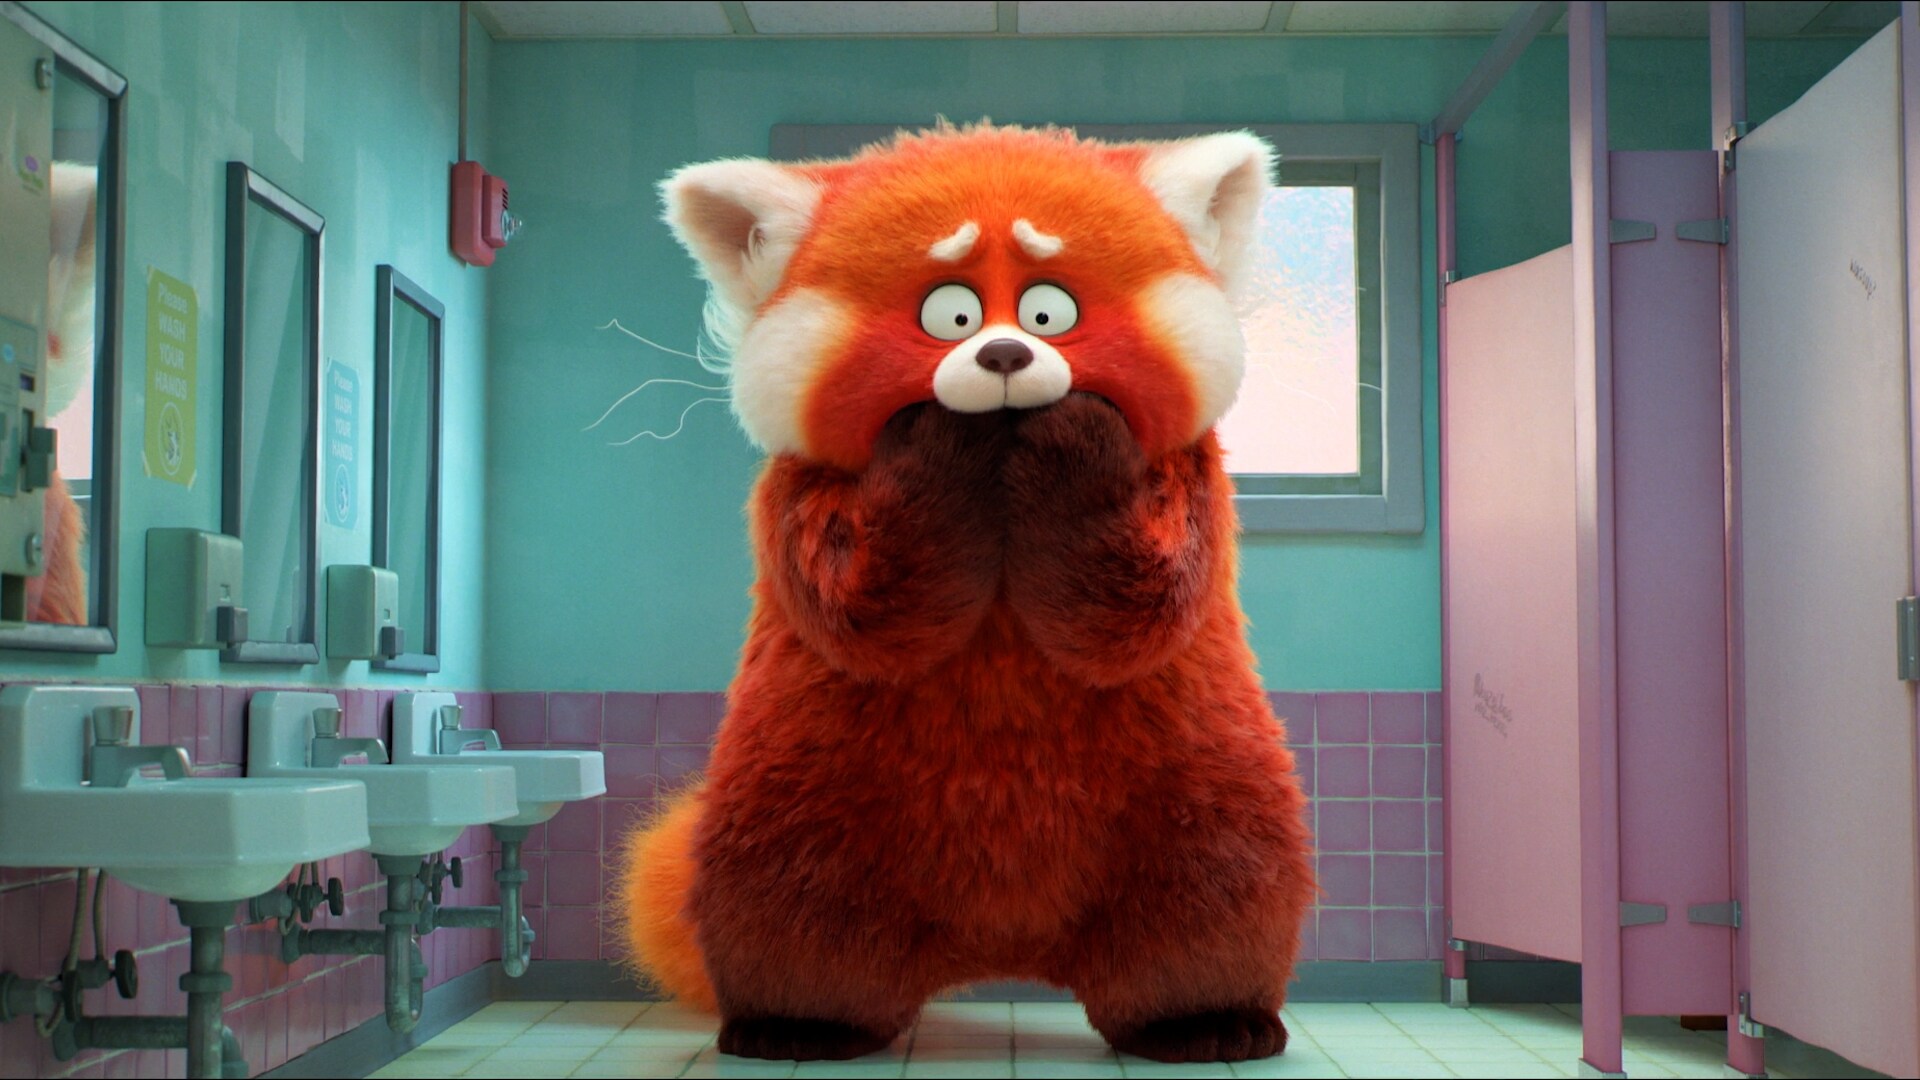 Red: qué simboliza el panda rojo en la película de Pixar 